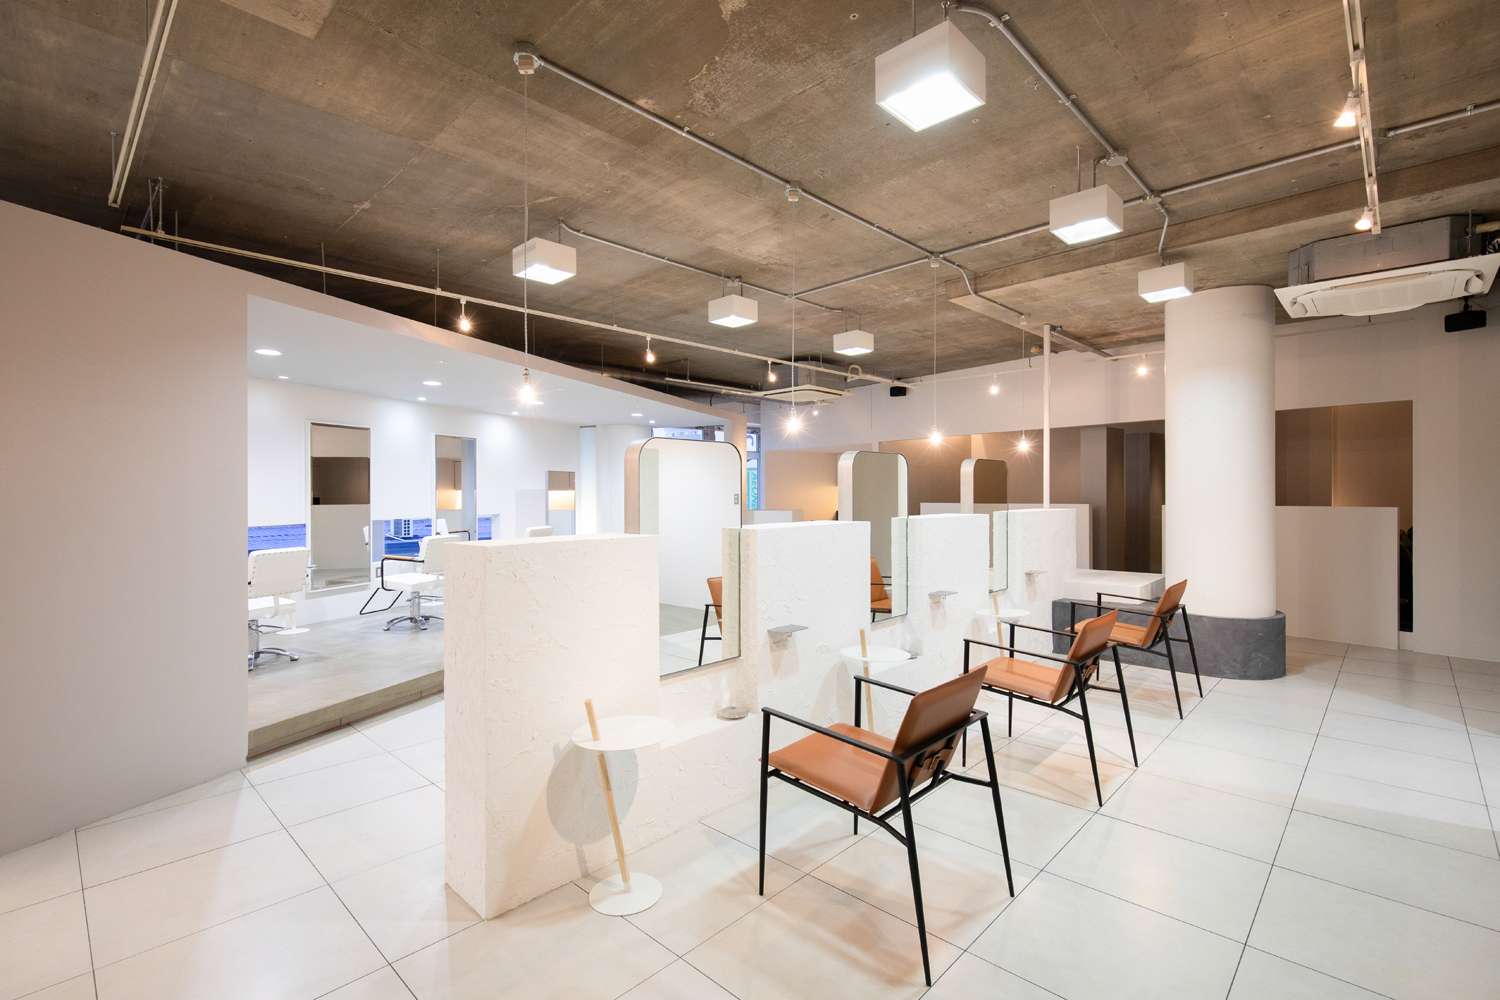 名古屋で個性あふれるおしゃれな空間デザイン、内装デザインを通じて、人の集まる場、コミュニケーションの場を想像する設計事務所asazu design office